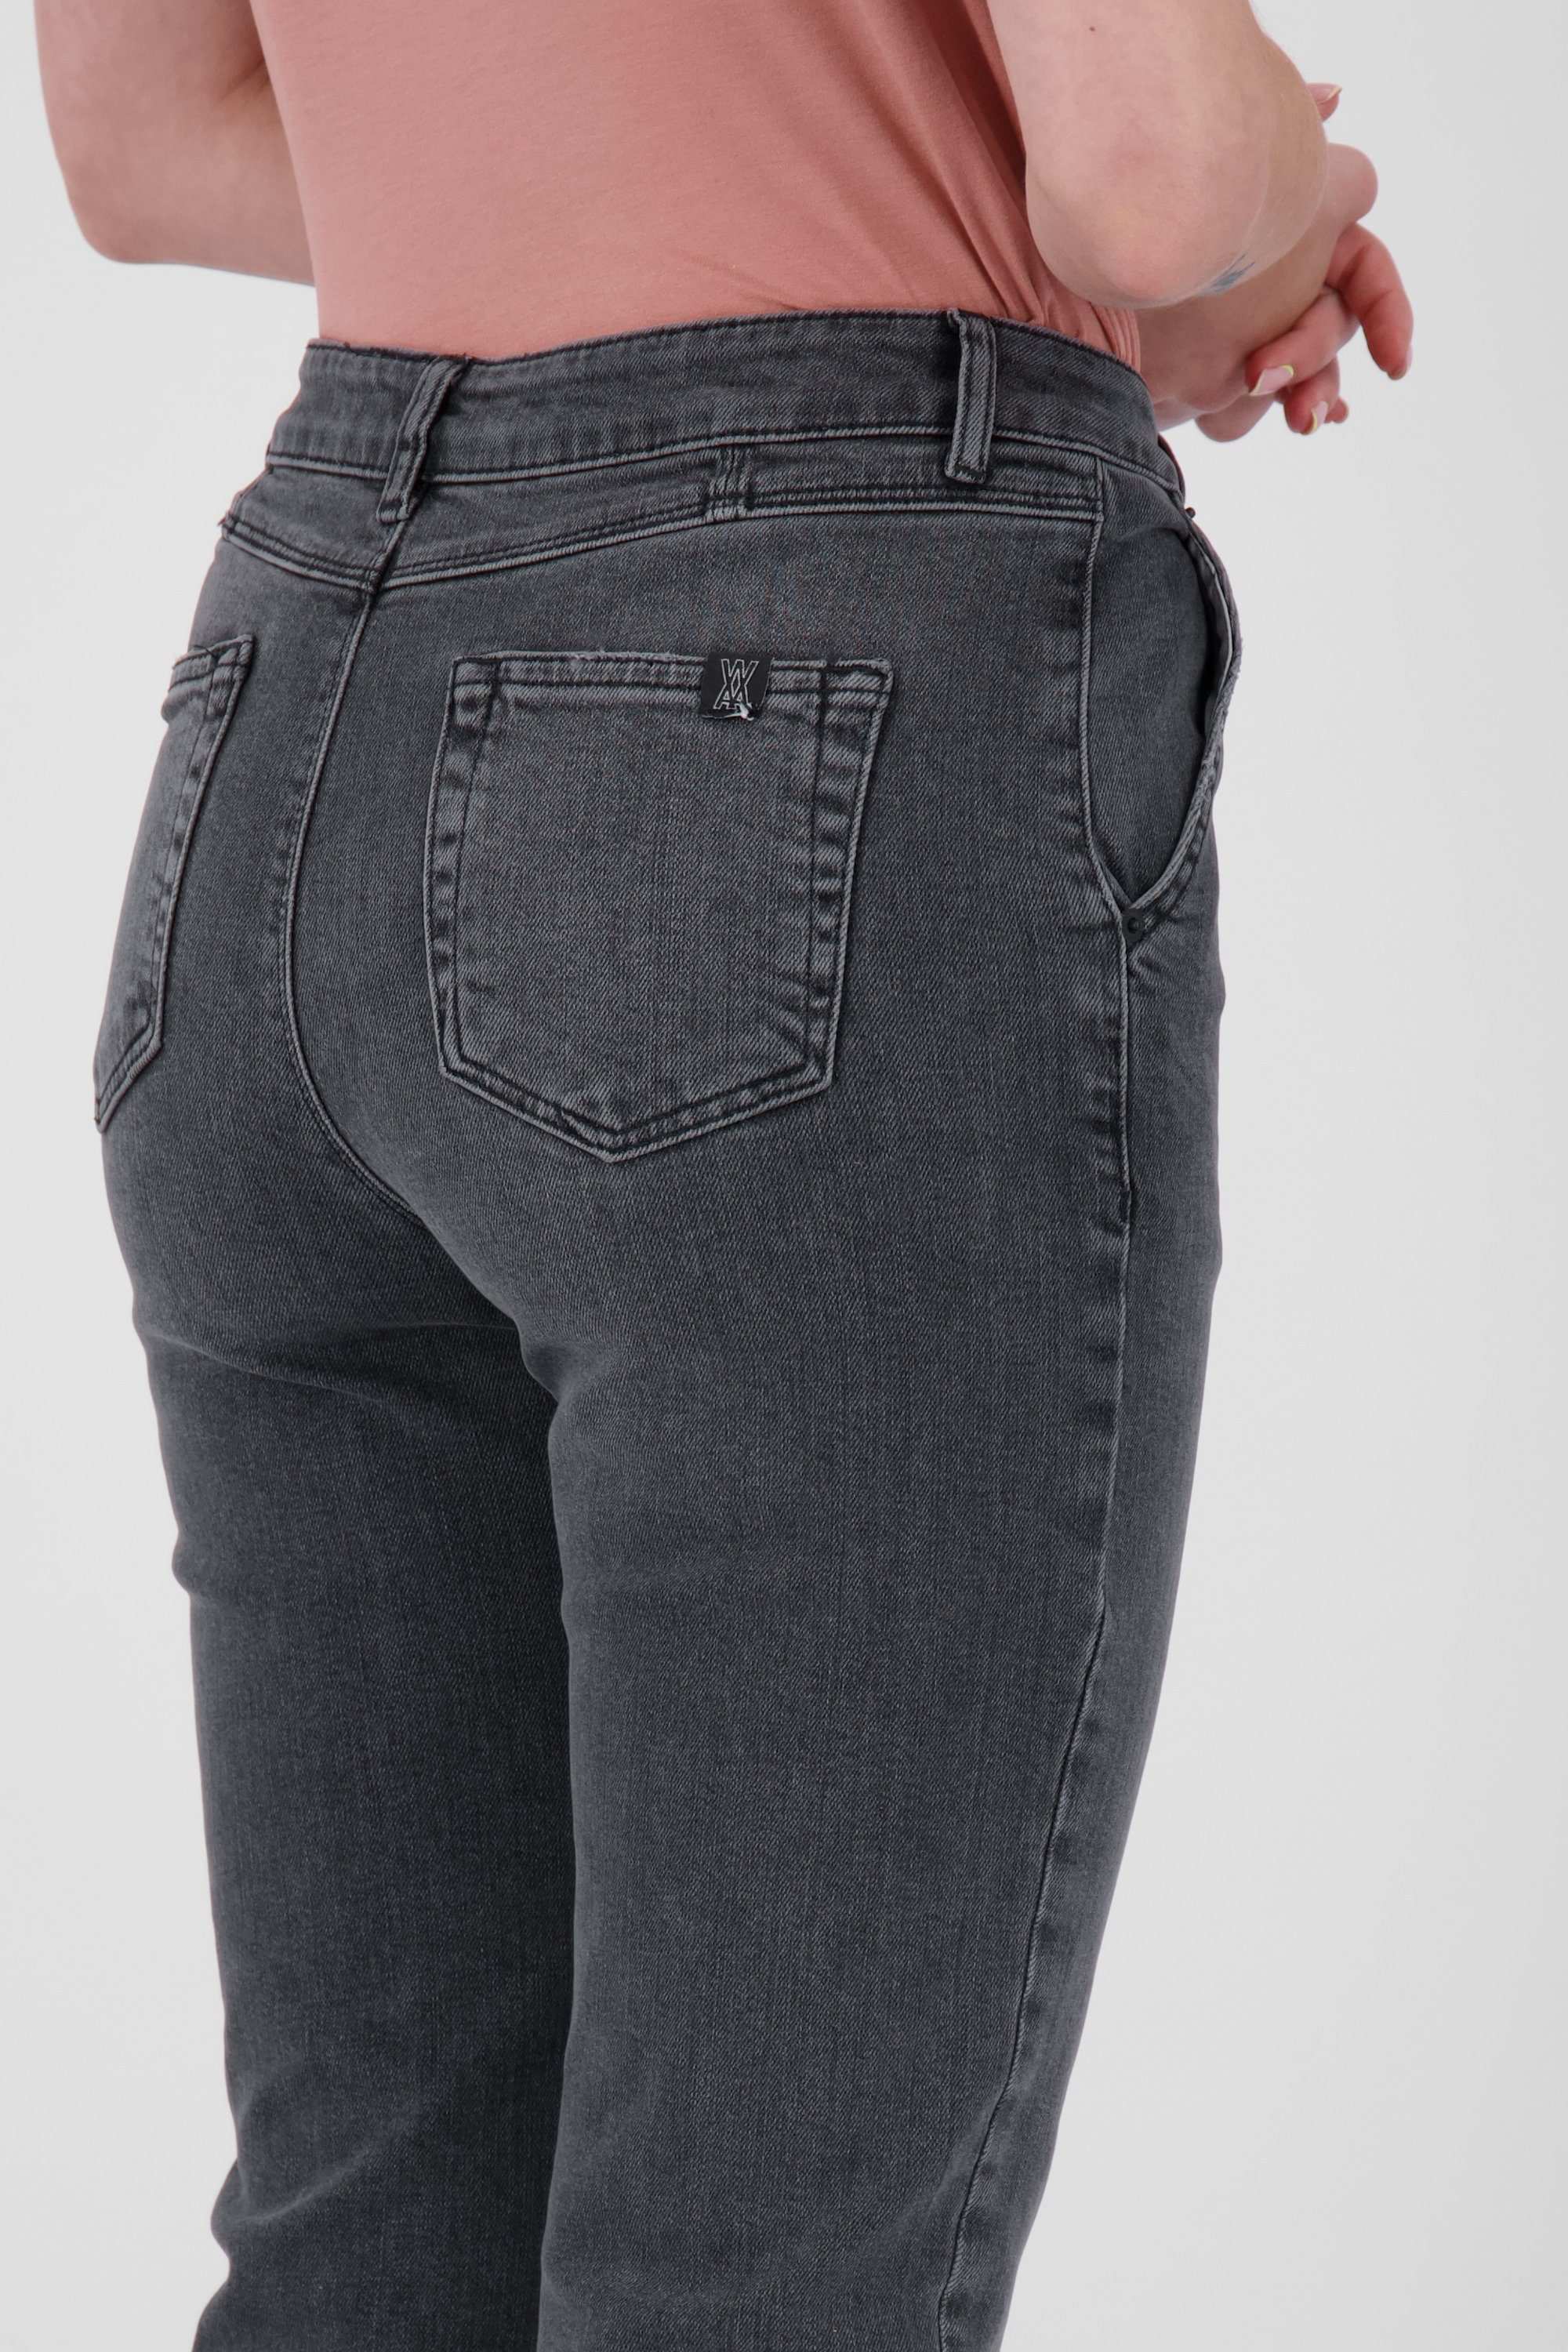 Damen Pants Kickin LaureenAK Alife DNM Q & Mom-Jeans Jeanshose